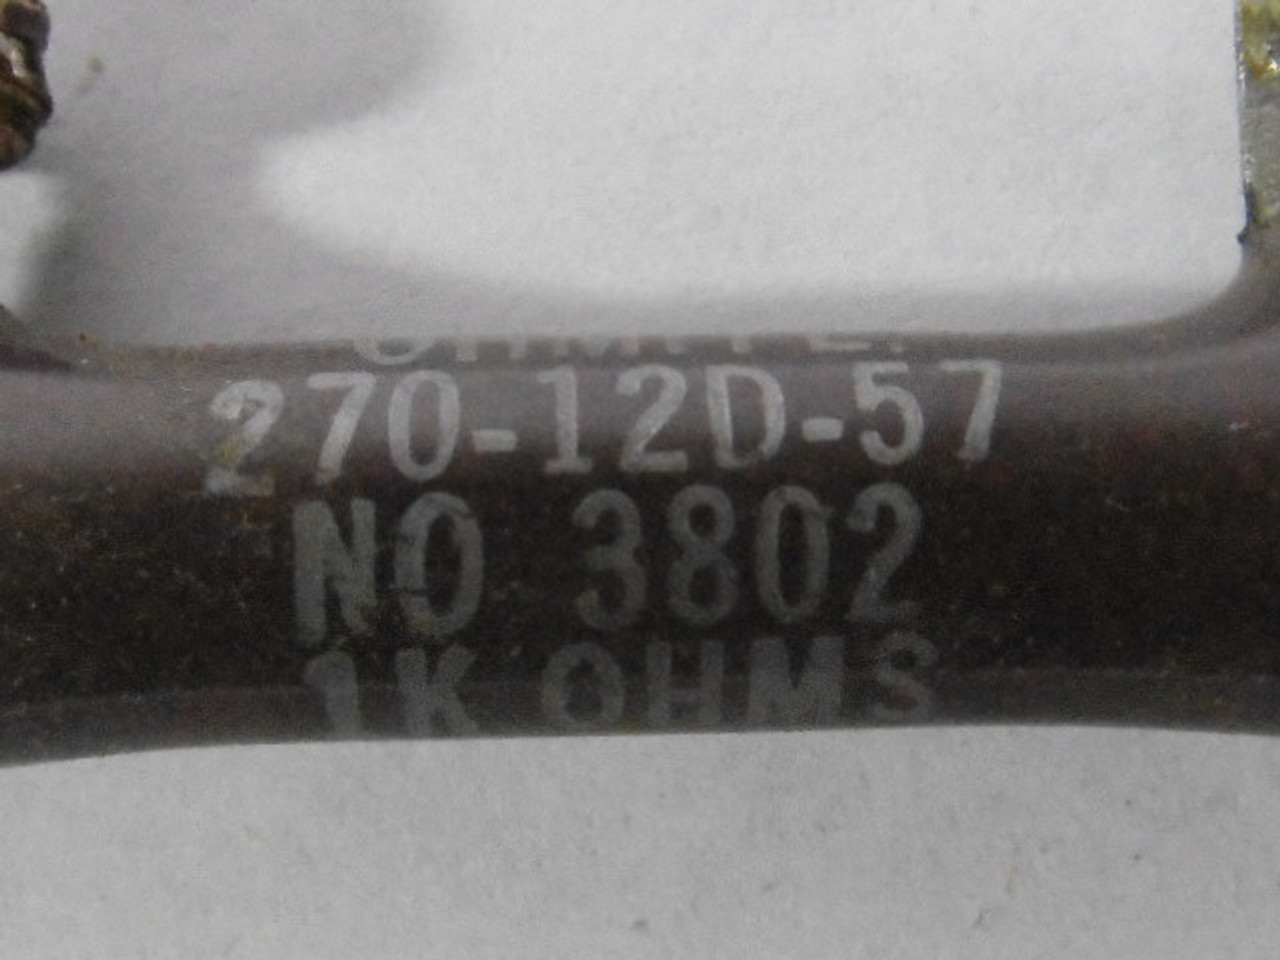 Ohmite 270-12D-57-1K00 Resistor 12W 1000 Ohm USED